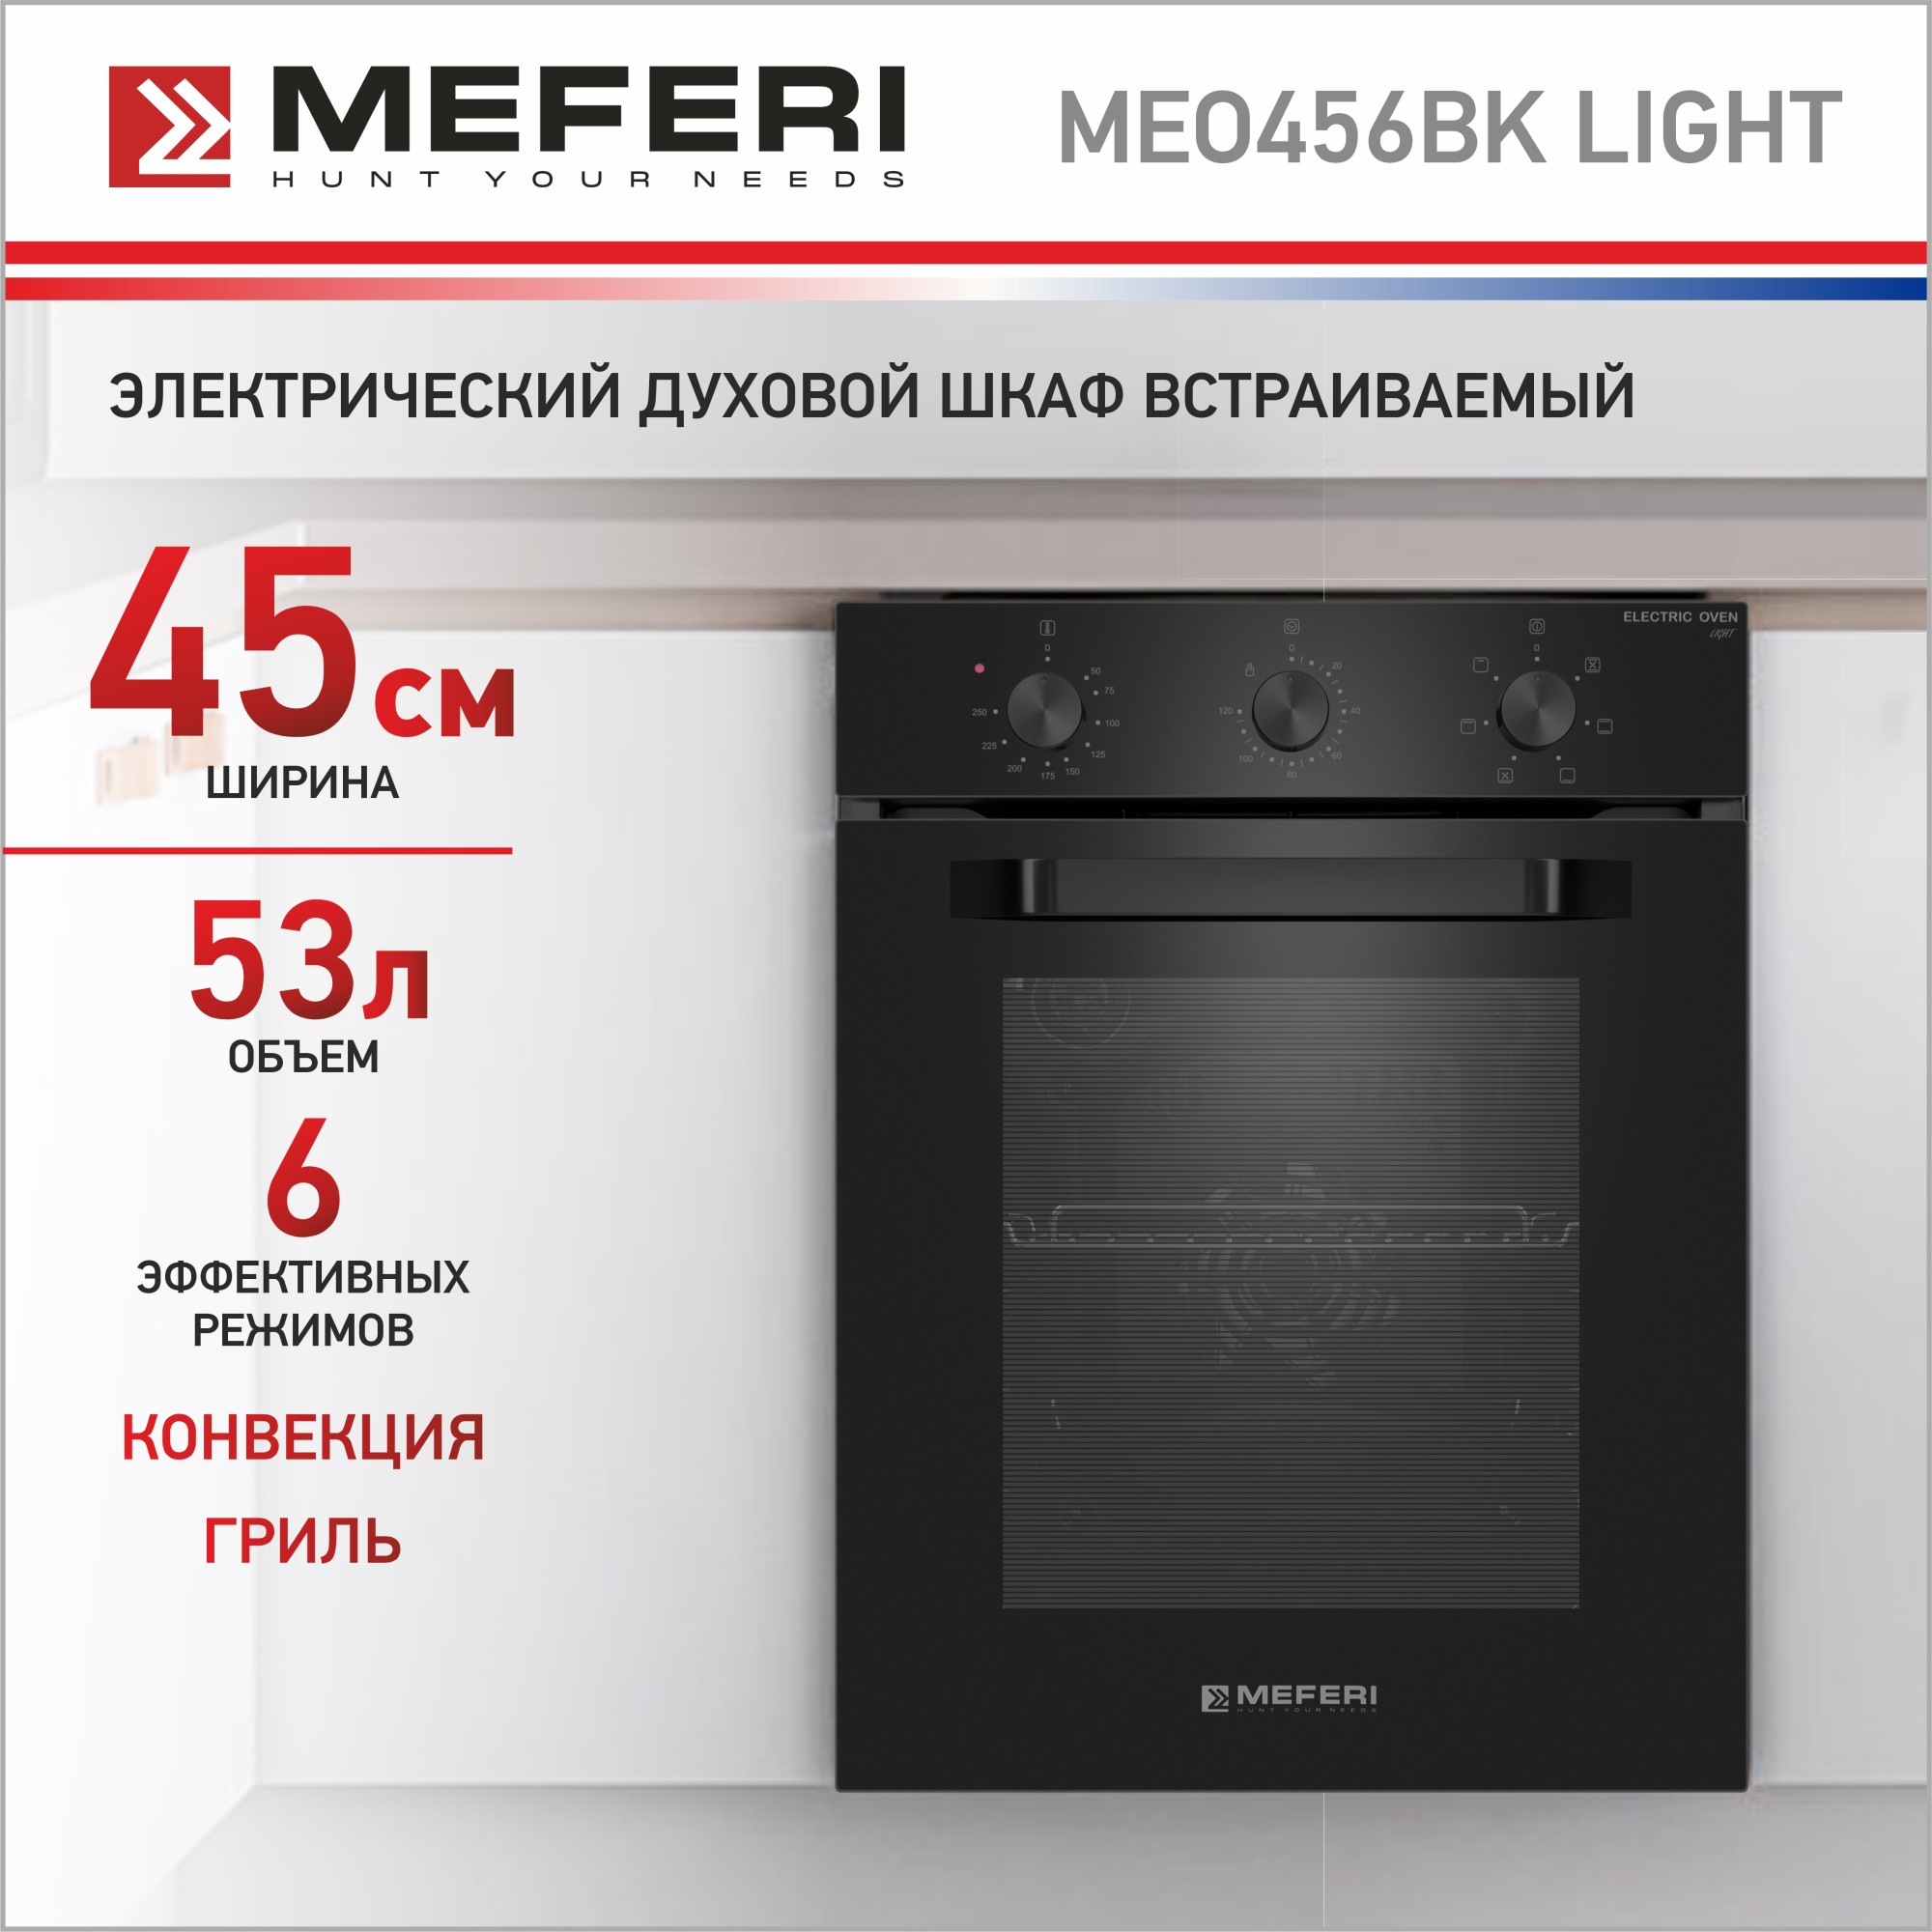 Электрический духовой шкаф MEFERI MEO456BK LIGHT научные опыты и эксперименты аниашвили к с вайткене л д спектор а а